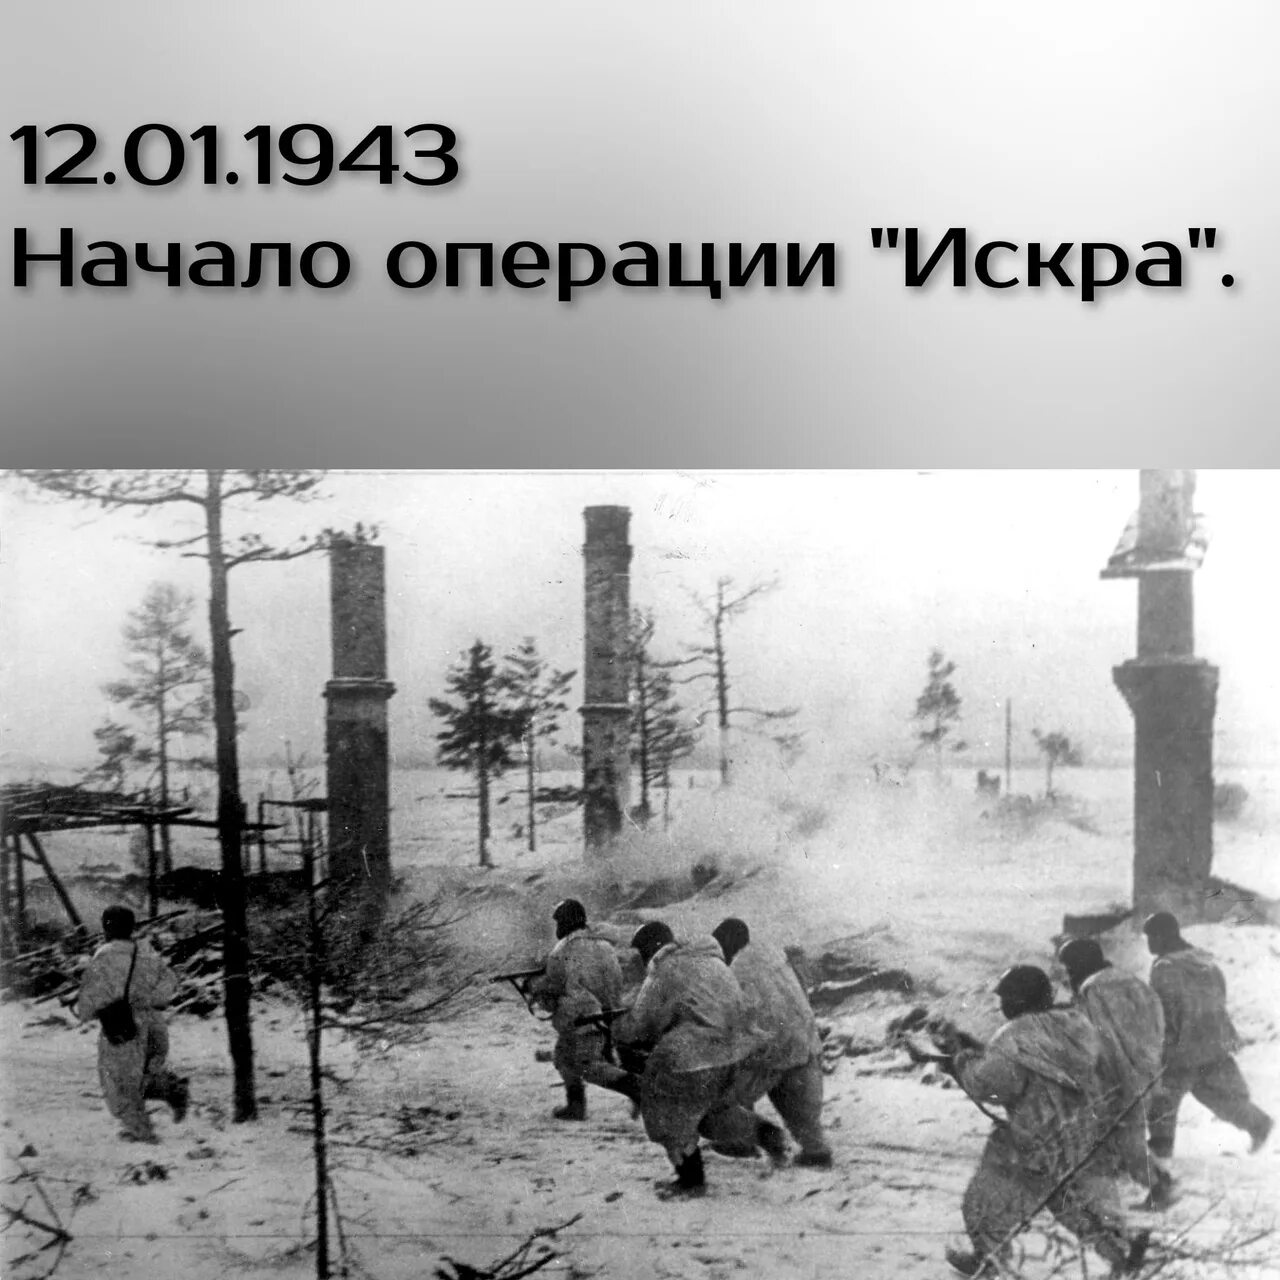 Прорыв блокады 1943. Январь 1943 прорыв блокады Ленинграда. Скоро наступление россии